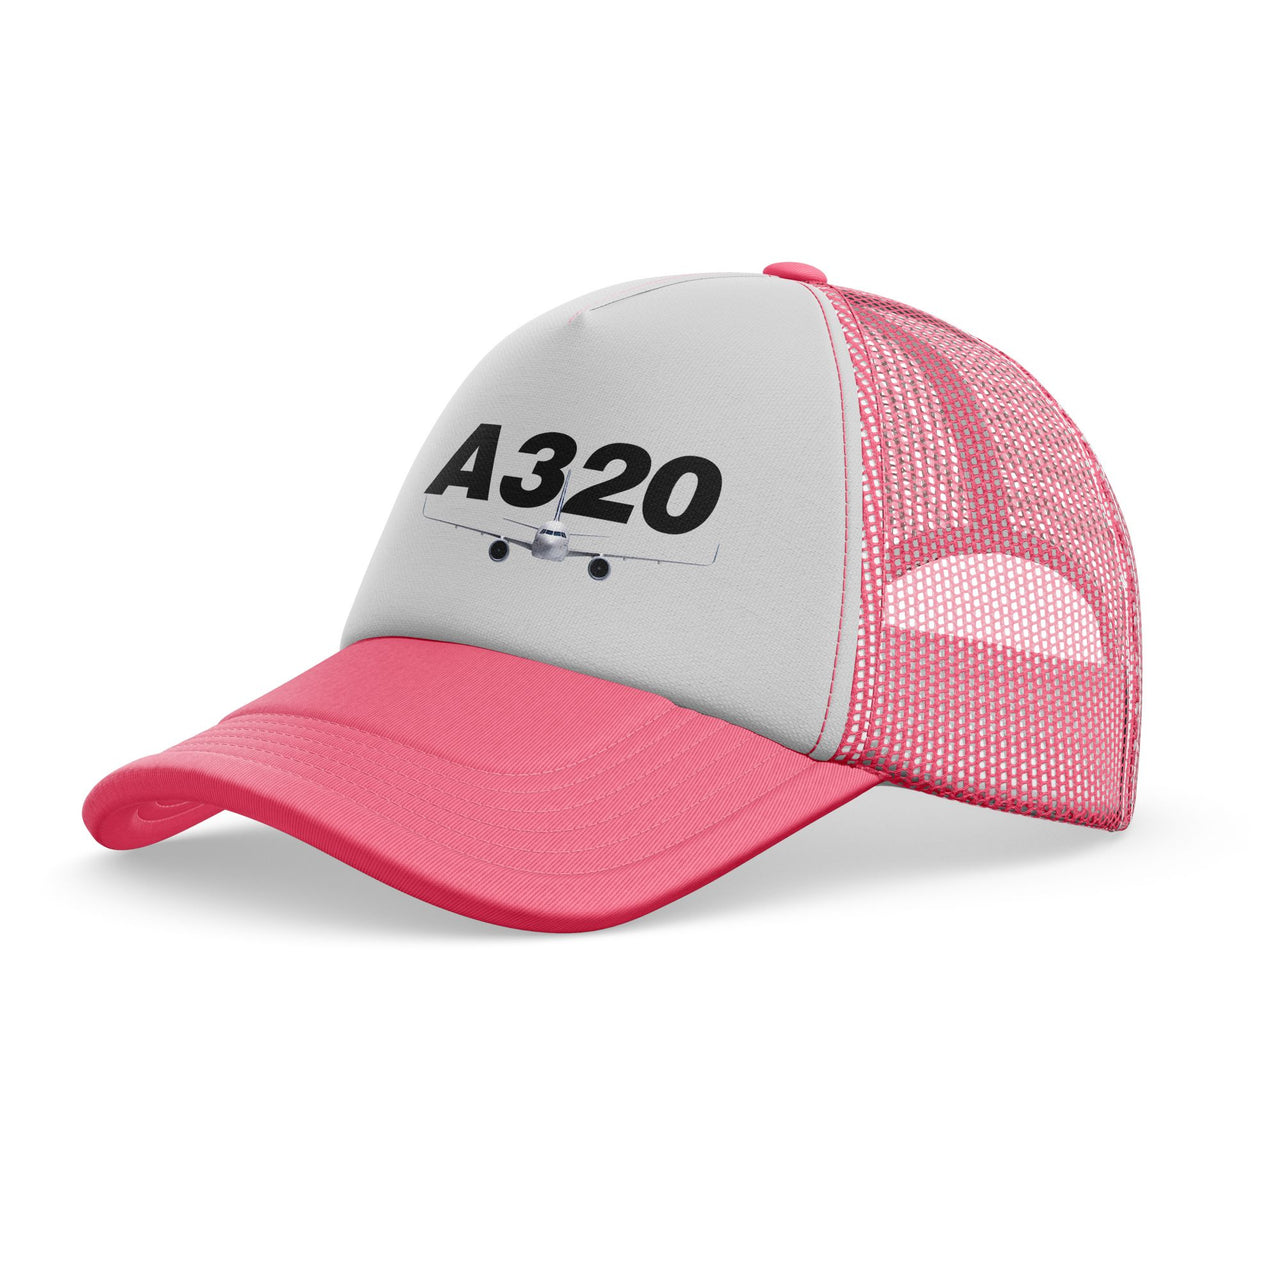 Super Airbus A320 Designed Trucker Caps & Hats